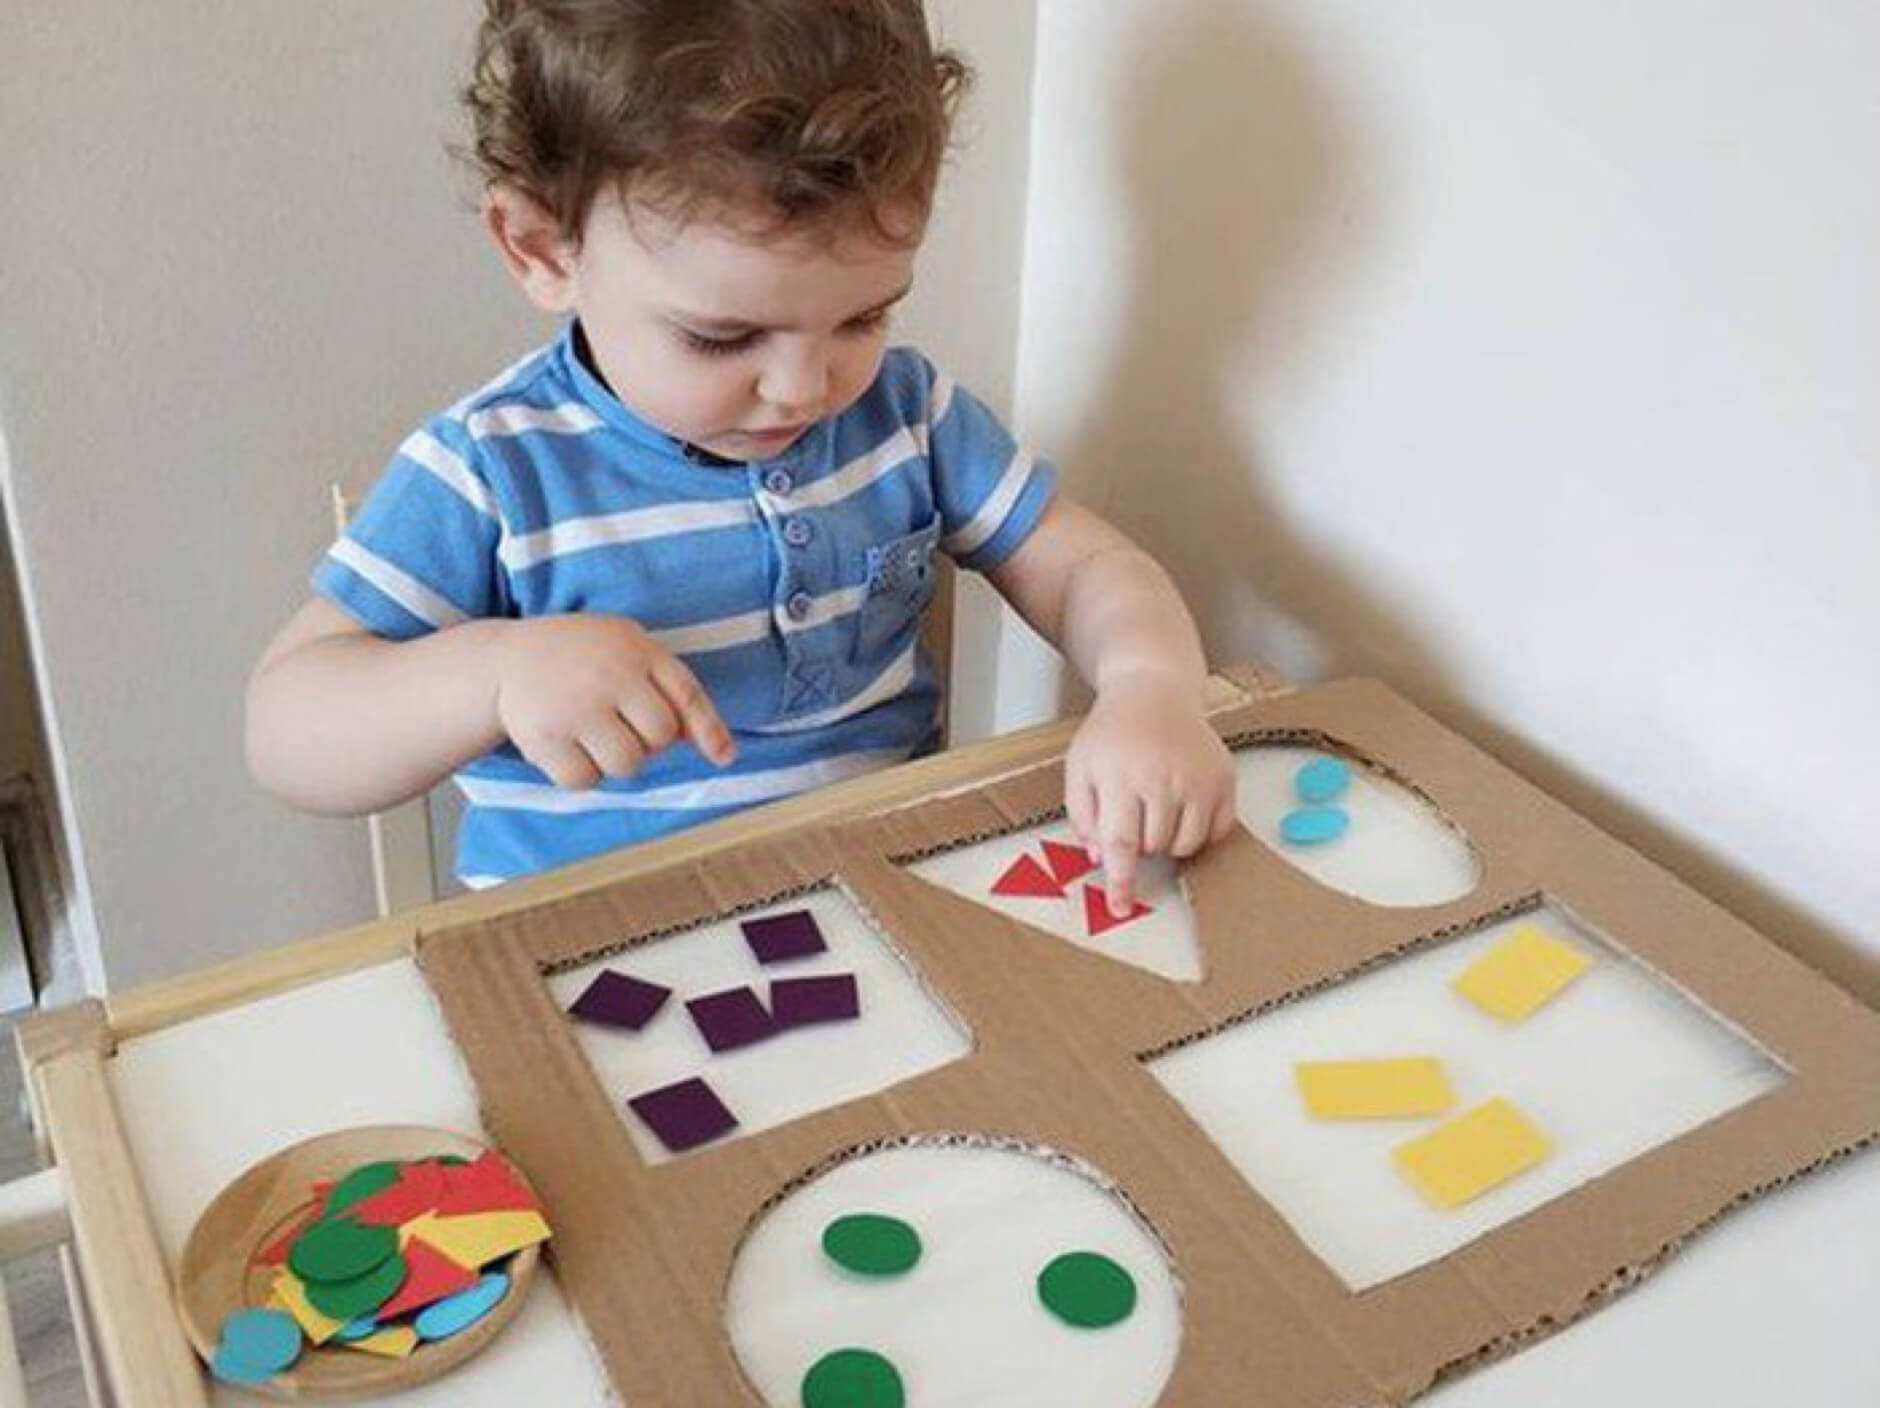 Với đồ chơi học toán cho trẻ mầm non, trẻ sẽ không chỉ học về số, toán học mà còn rèn luyện khả năng tư duy logic. Những món đồ chơi tuyệt vời của chúng tôi sẽ giúp trẻ em của bạn có những phút giây bổ ích và vui nhộn.